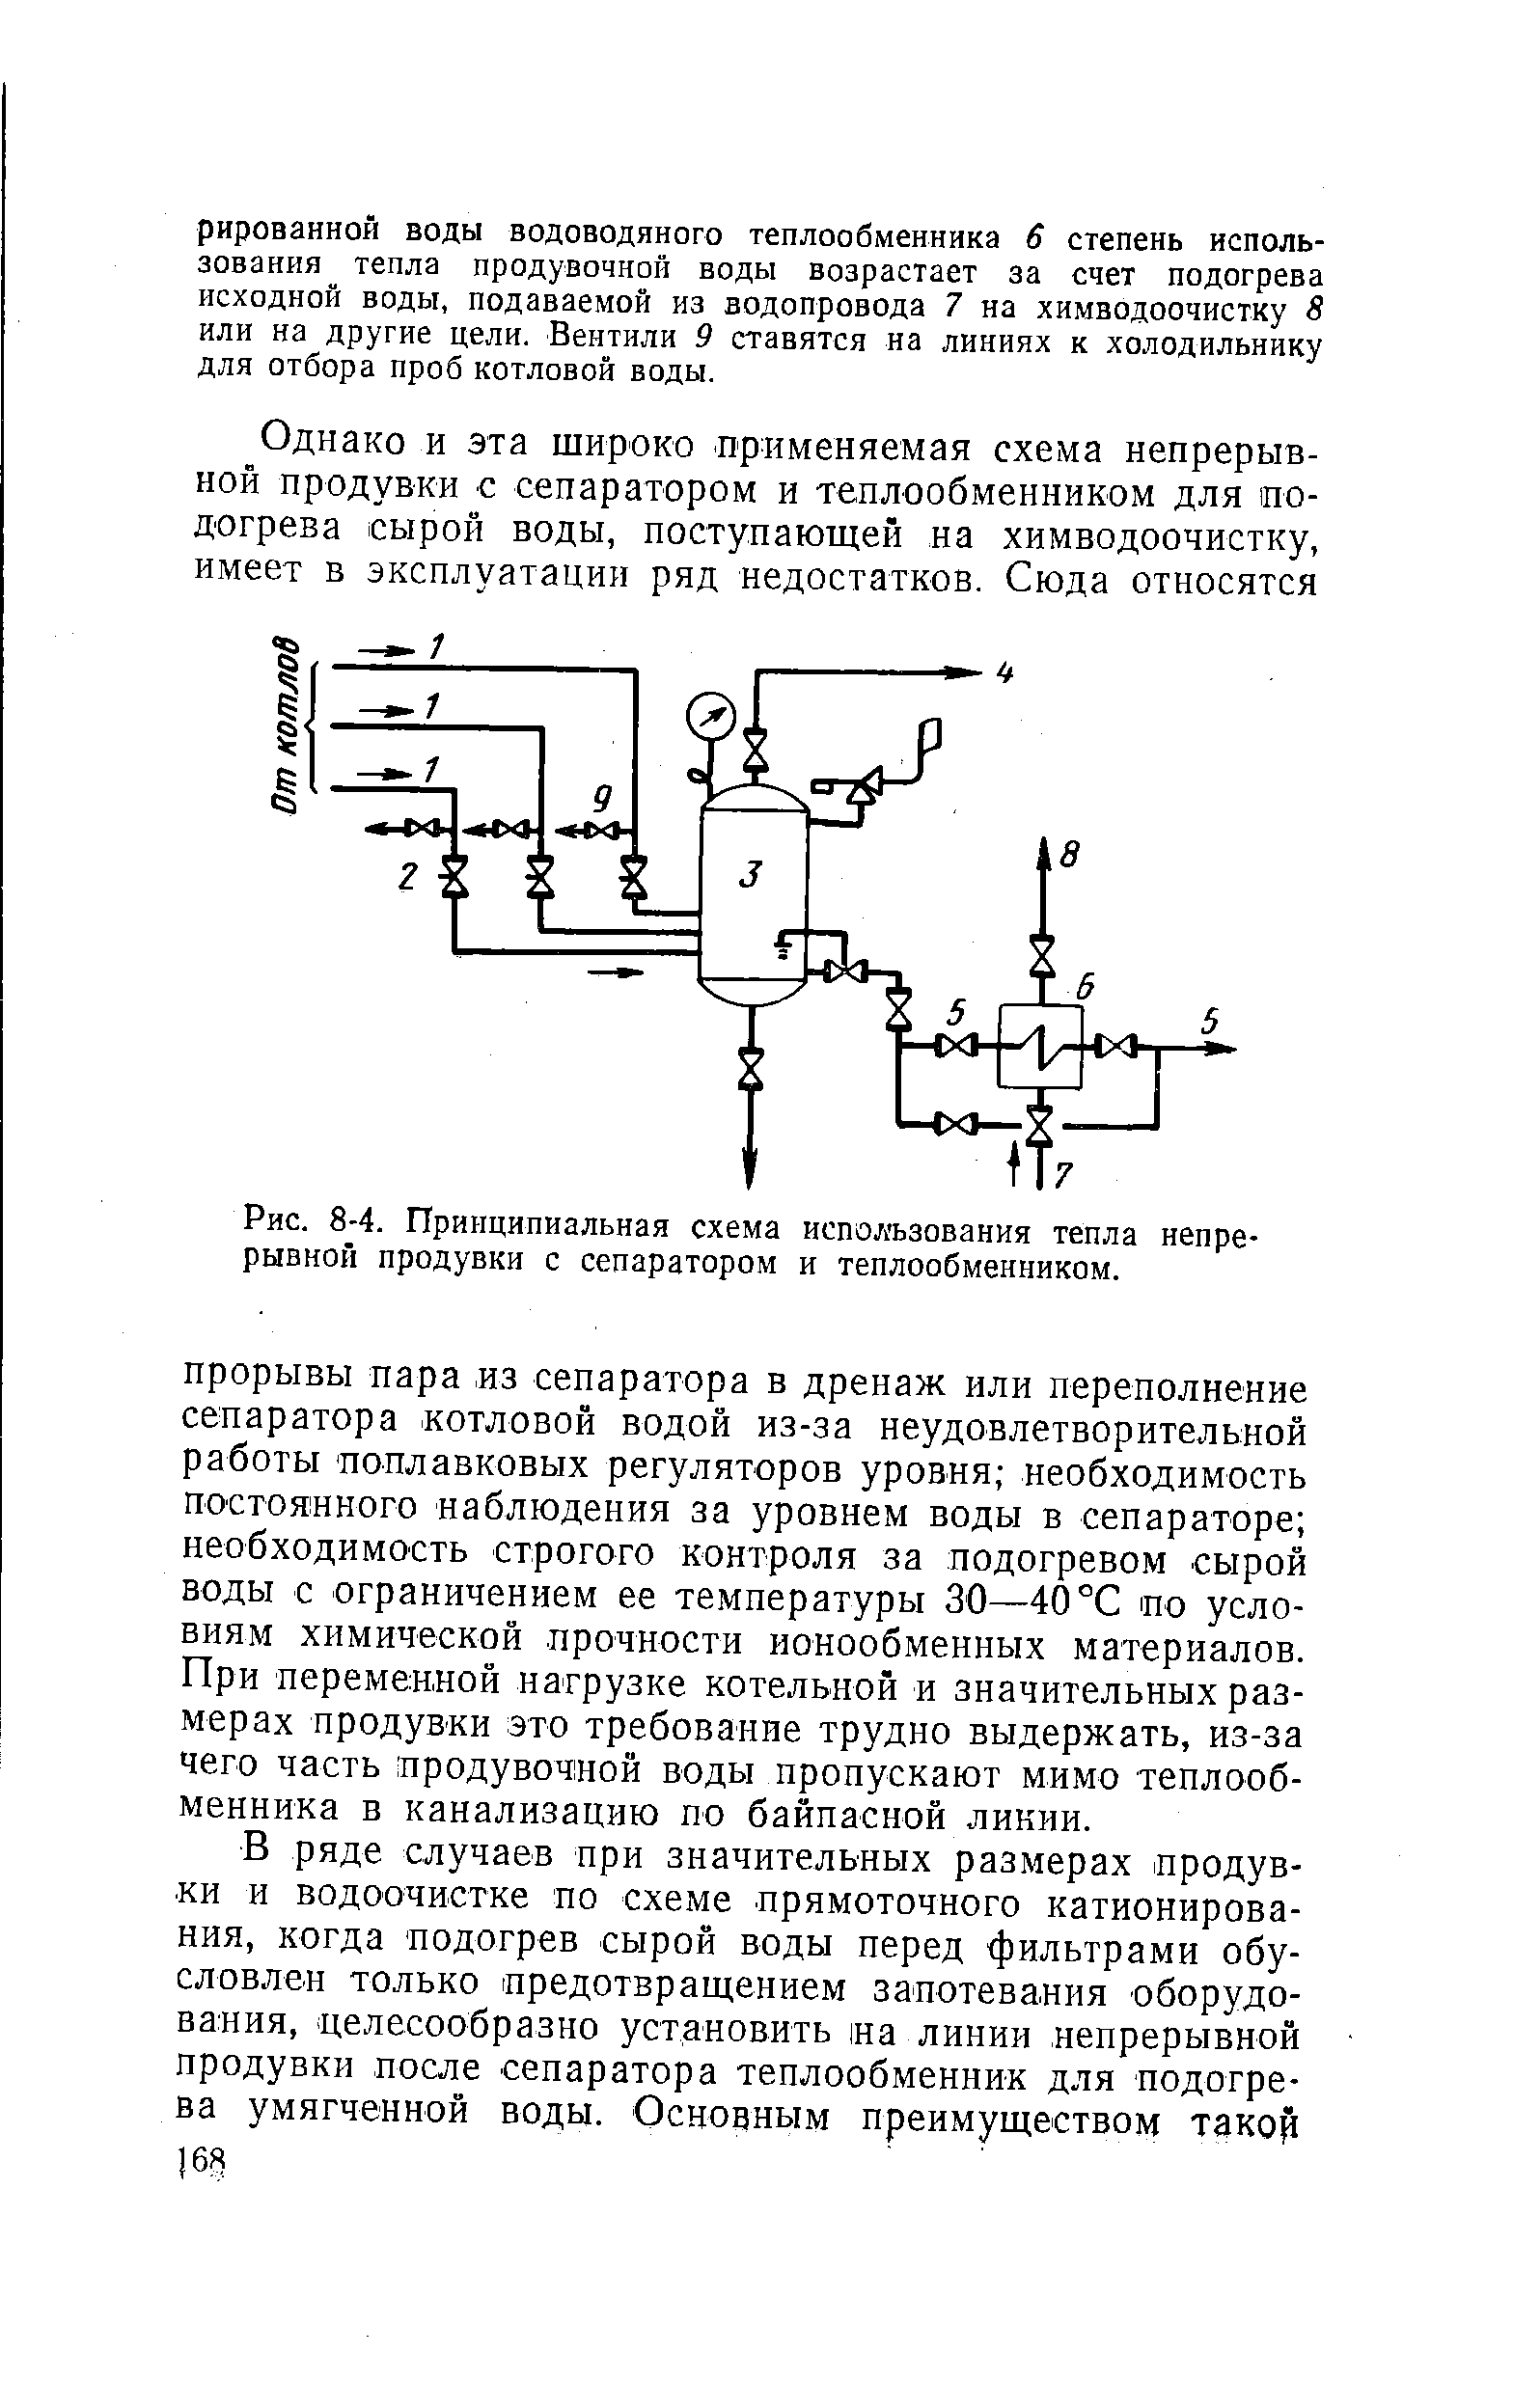 Рис. 8-4. Принципиальная схема использования тепла непрерывной продувки с сепаратором и теплообменником.
